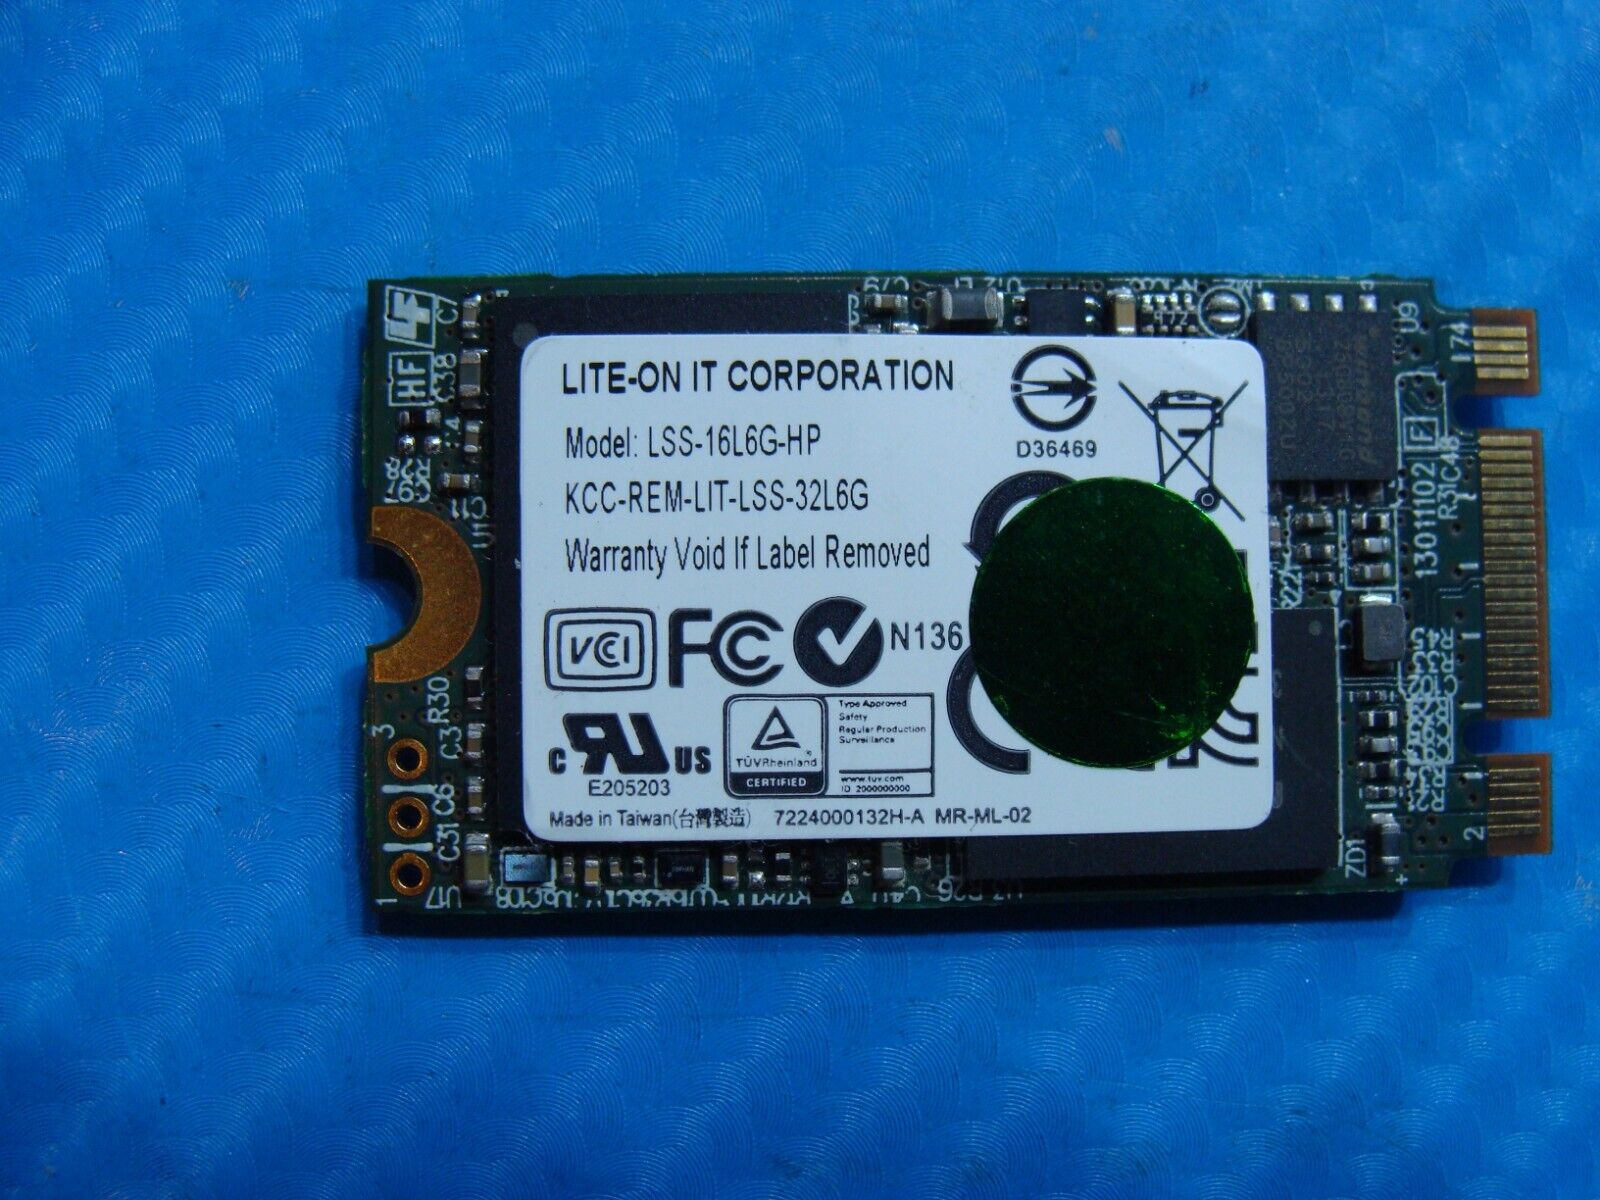 HP 14 LITE-ON 16GB mSATA M.2 SSD Solid State Drive 735314-001 LSS-16L6G-HP